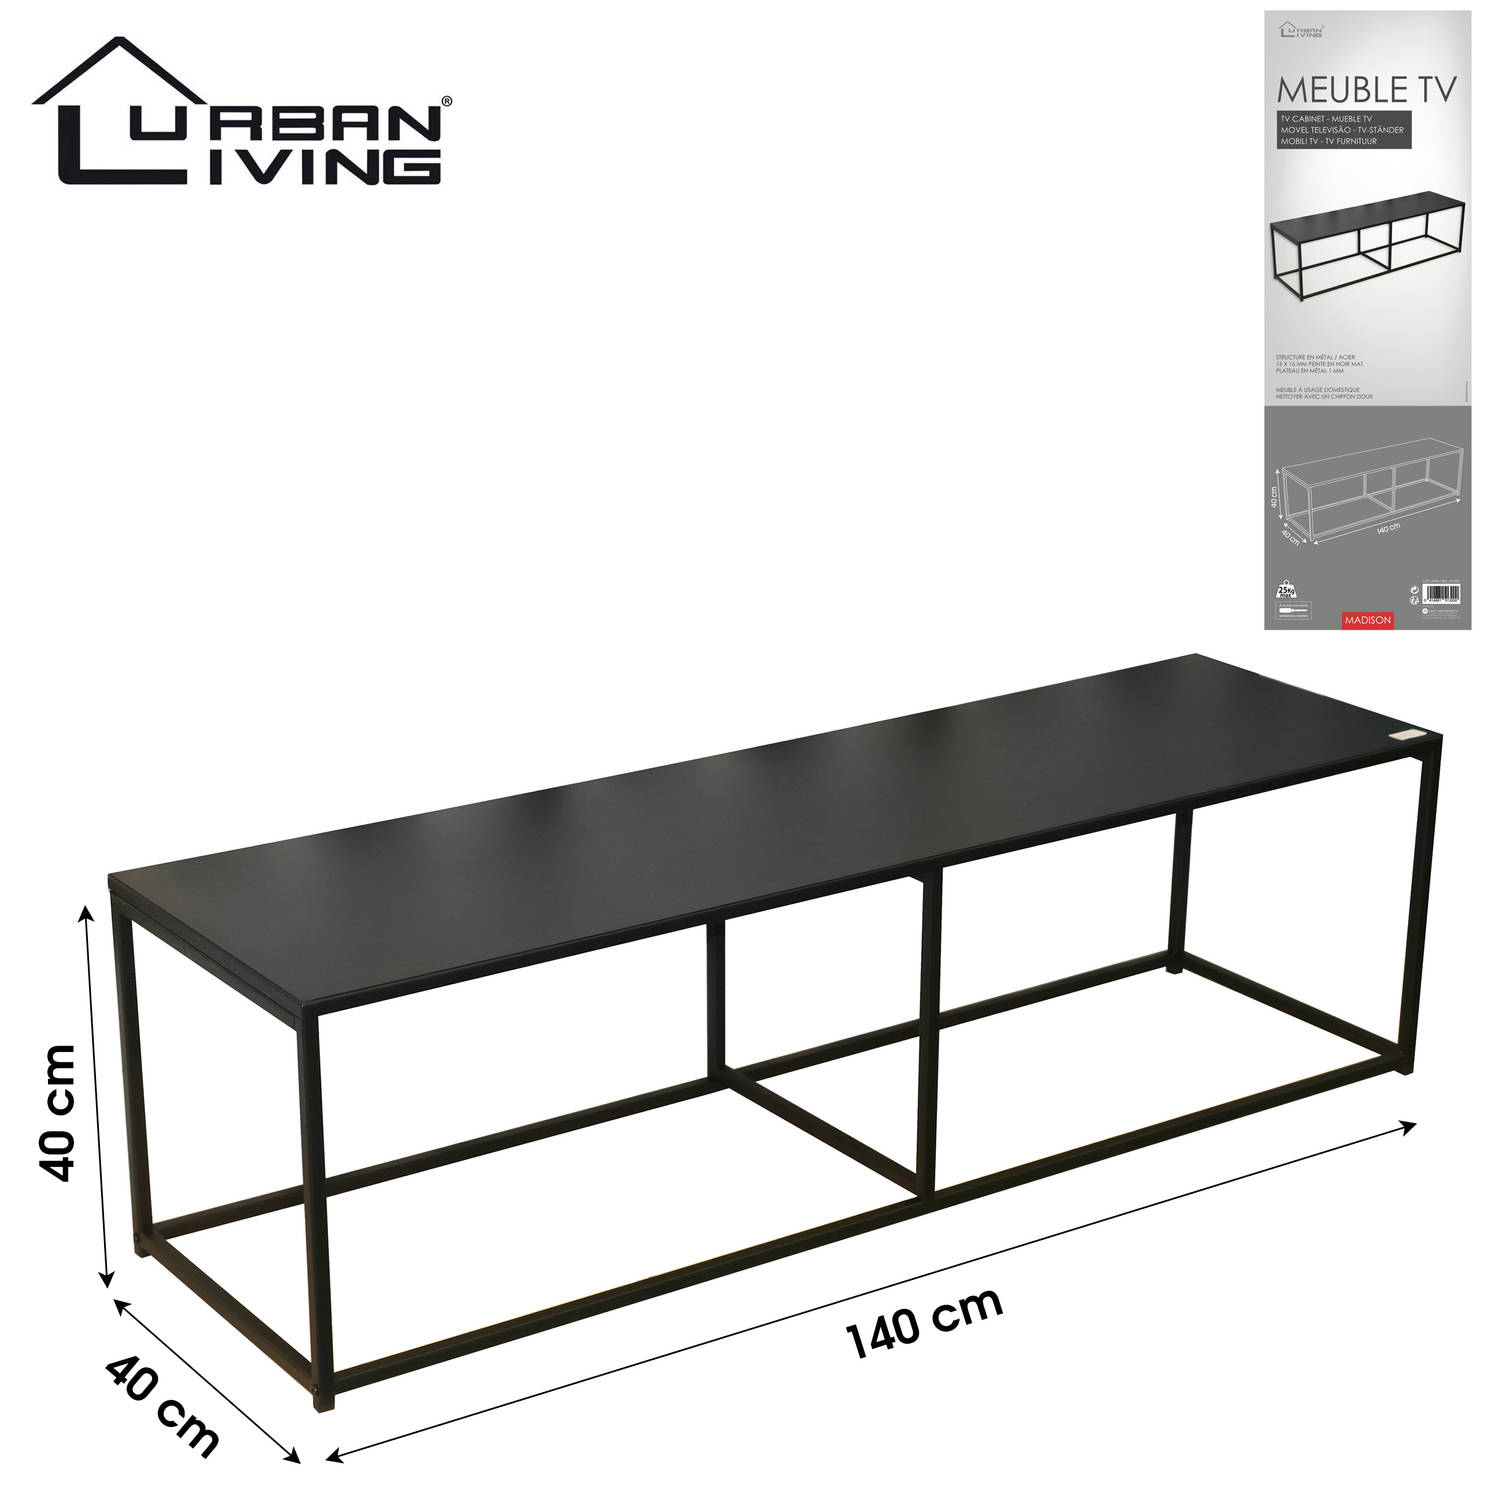 Gespecificeerd breedtegraad goochelaar Urban Living - Metalen TV-meubel/Dressoir - Industrieel Design | Blokker